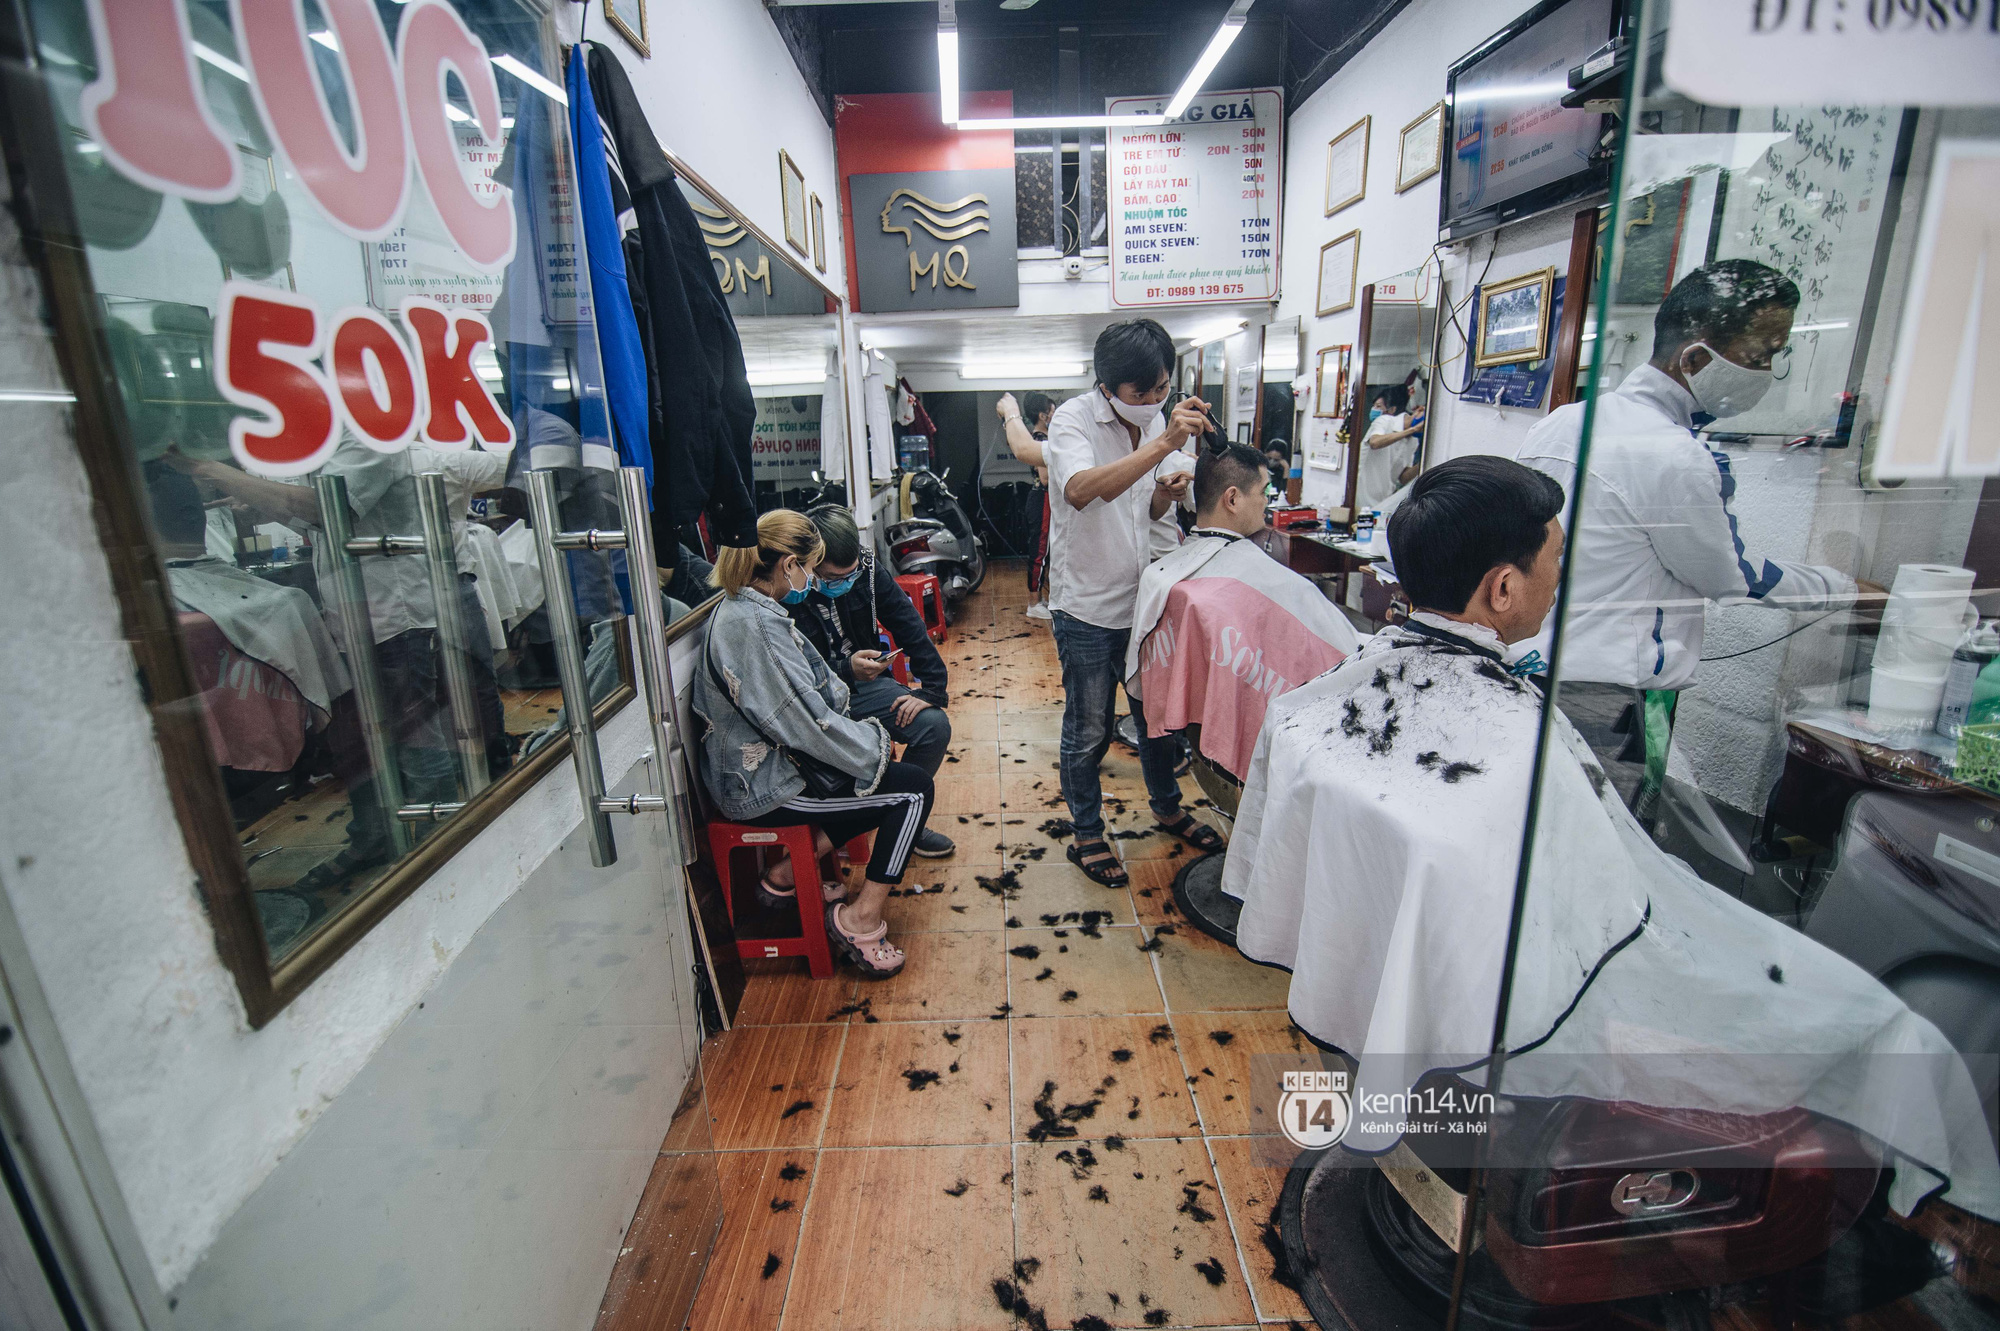 Quán cắt tóc mở từ 6h khách xếp hàng 2 giờ chưa đến lượt ở Hà Nội